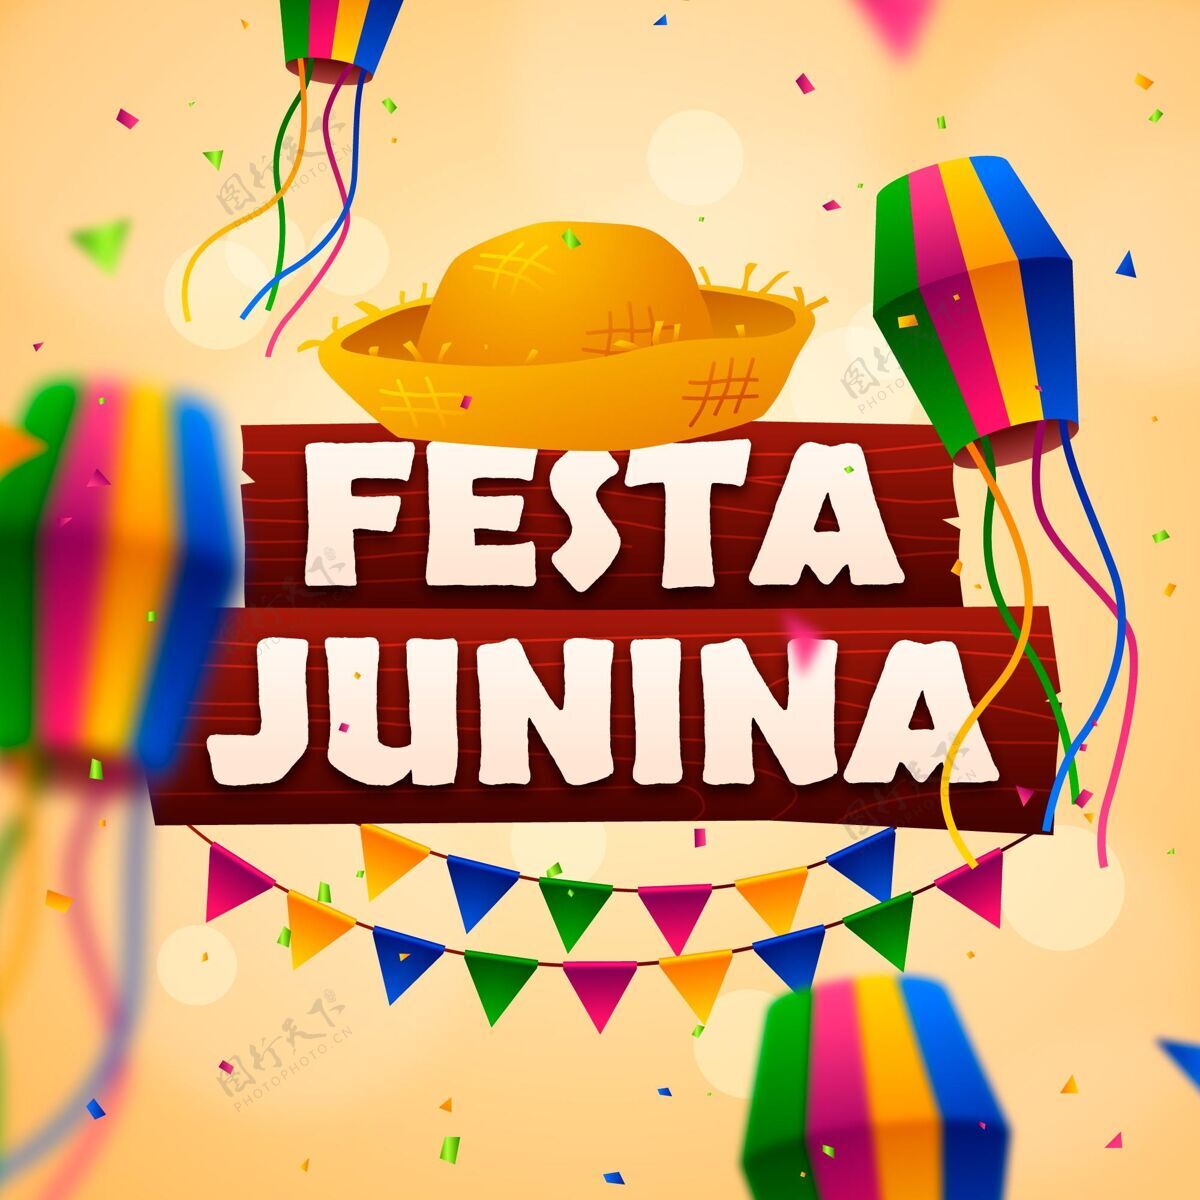 6月1日这是朱尼娜的插图收获巴西庆祝